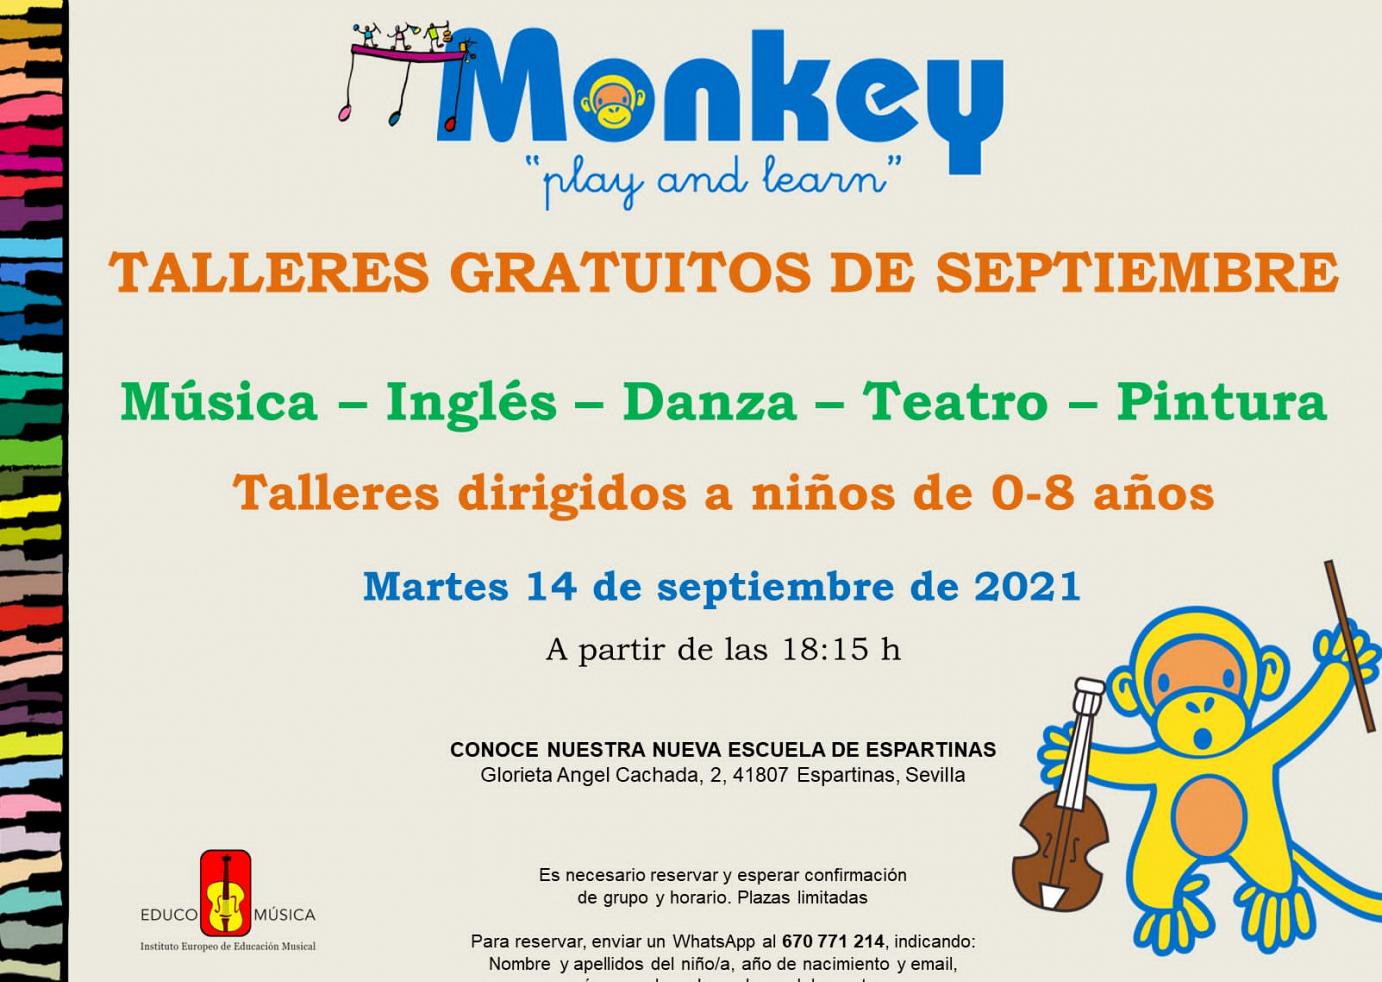 Talleres gratuitos para Septiembre en CEI Monkey Espartinas